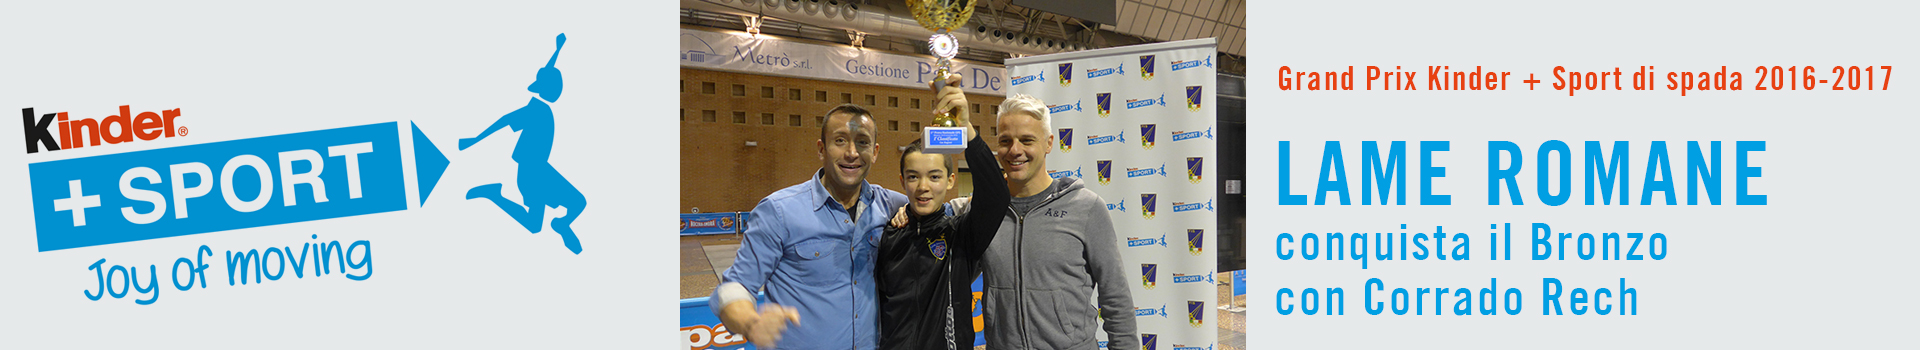 Corrado Rech conquista il bronzo al Grand Prix Kinder + Sport